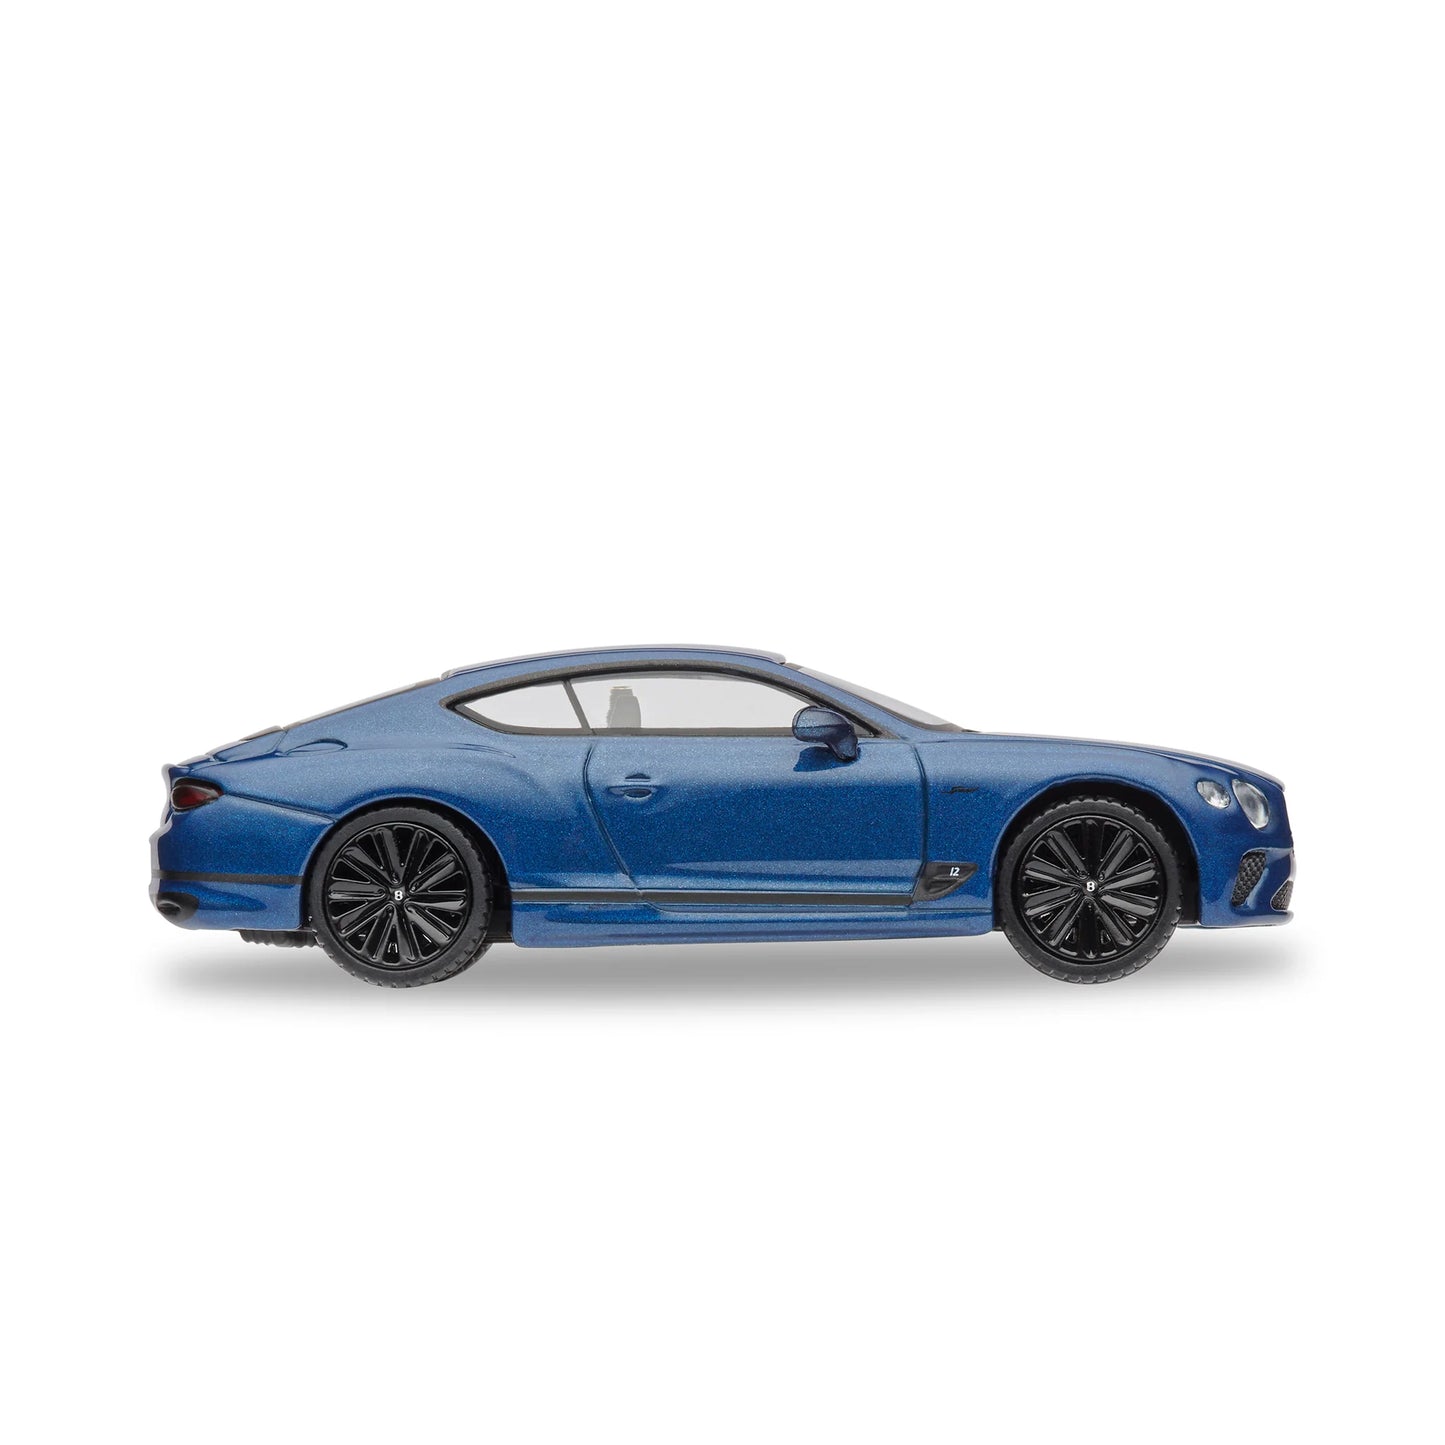 1:64 Bentley Continental GT Speed Marlin Blue Die Cast